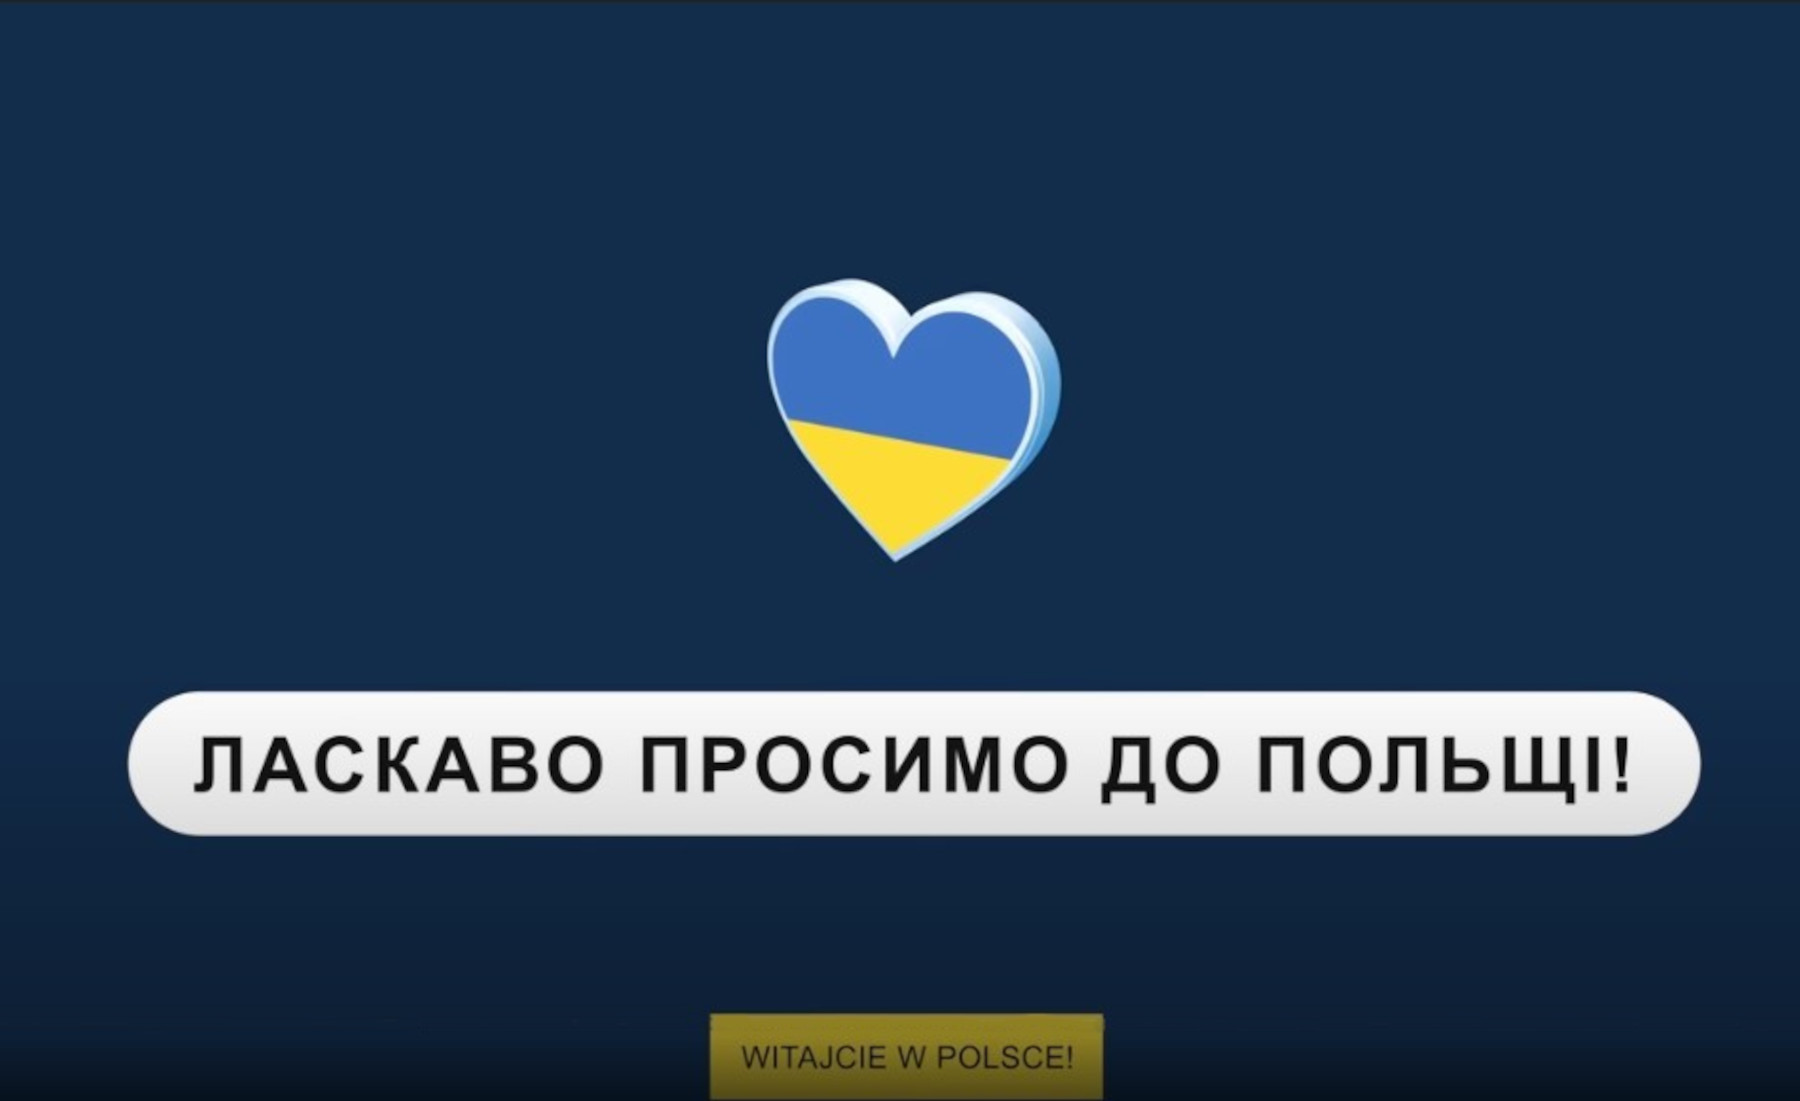 Serce w błękitno - żółtych barwach na granatowym tle.